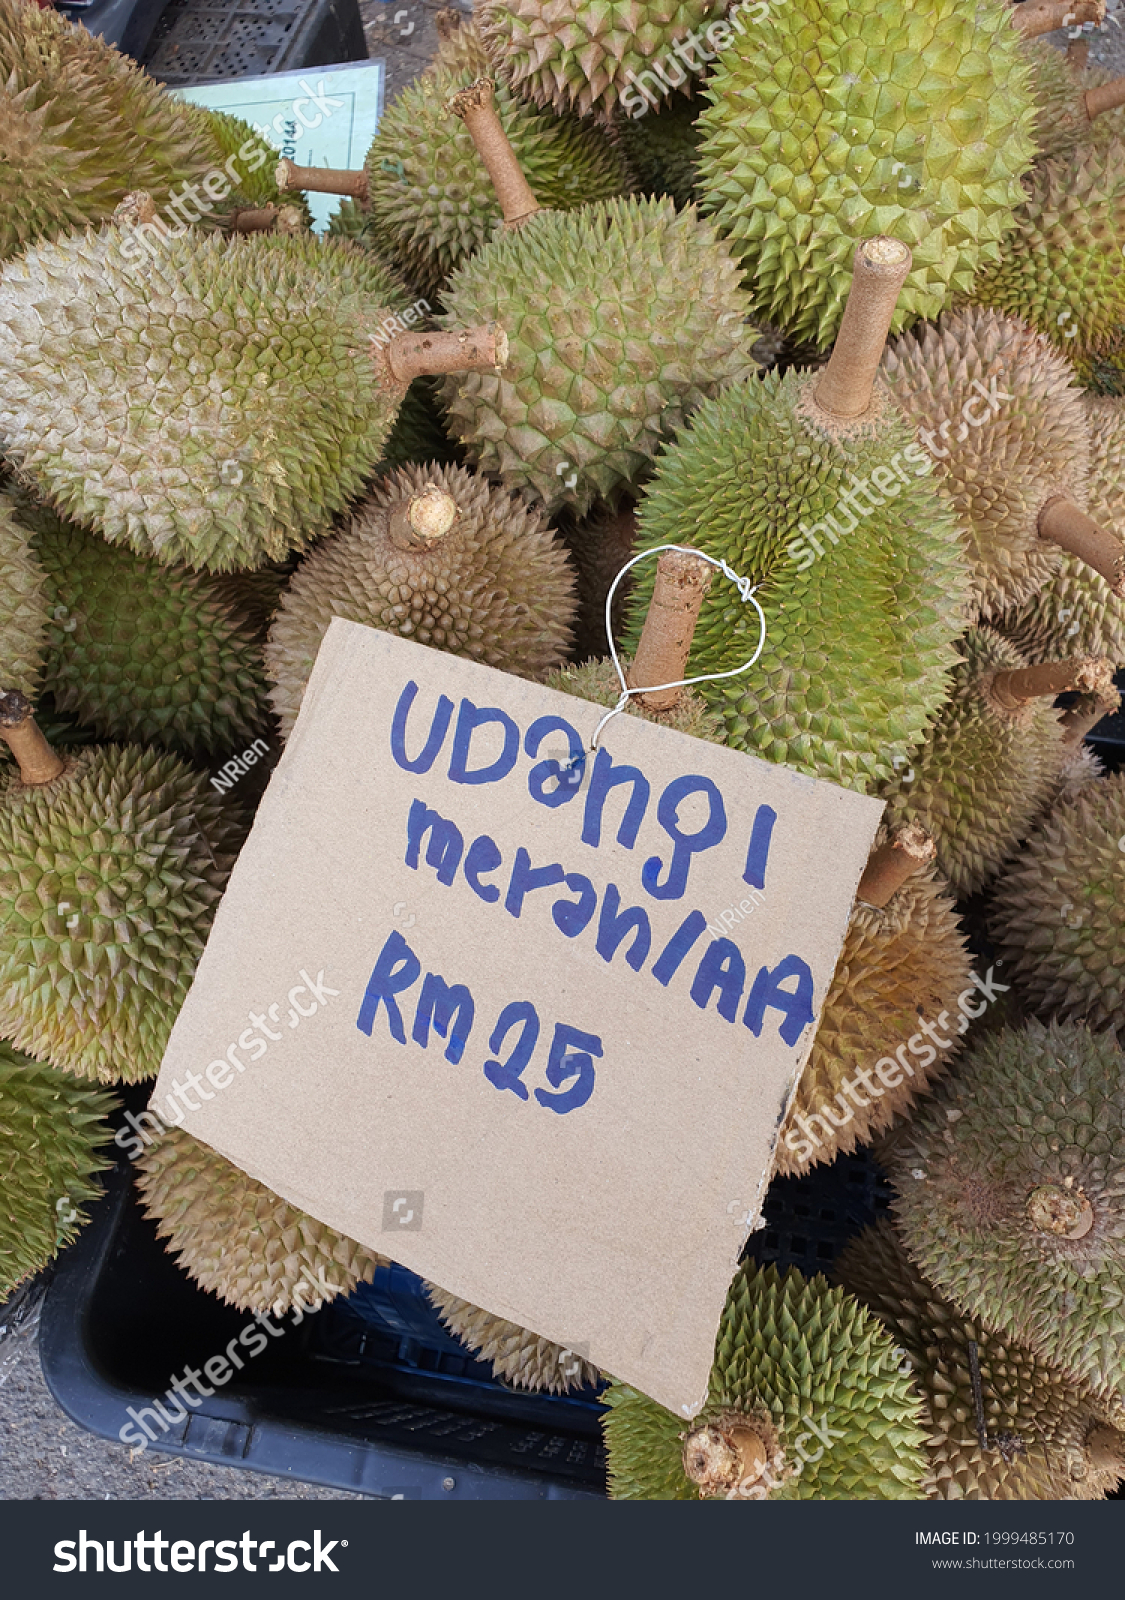 Price udang merah durian Bitter or